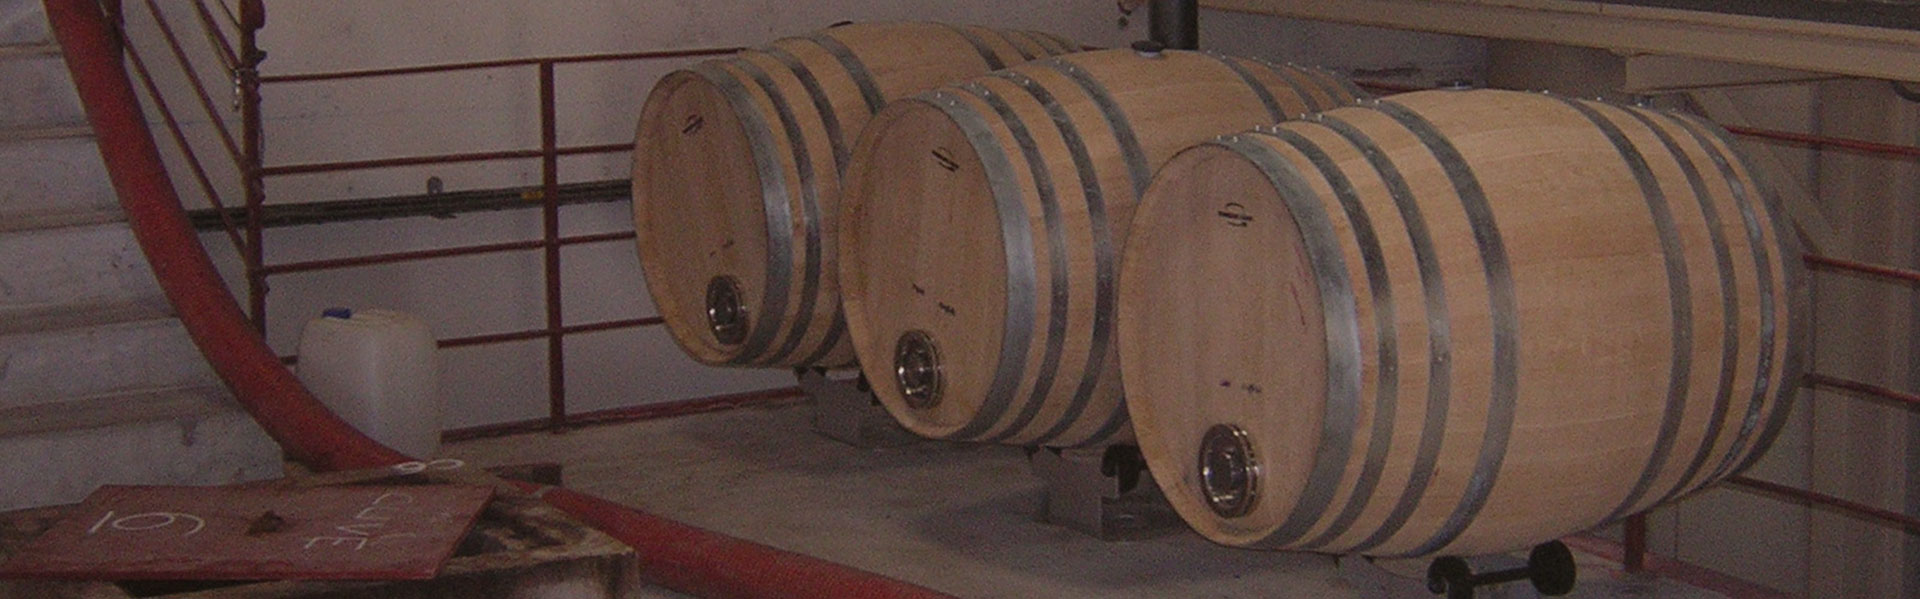 Pgi pays d'oc wines matured in barrel